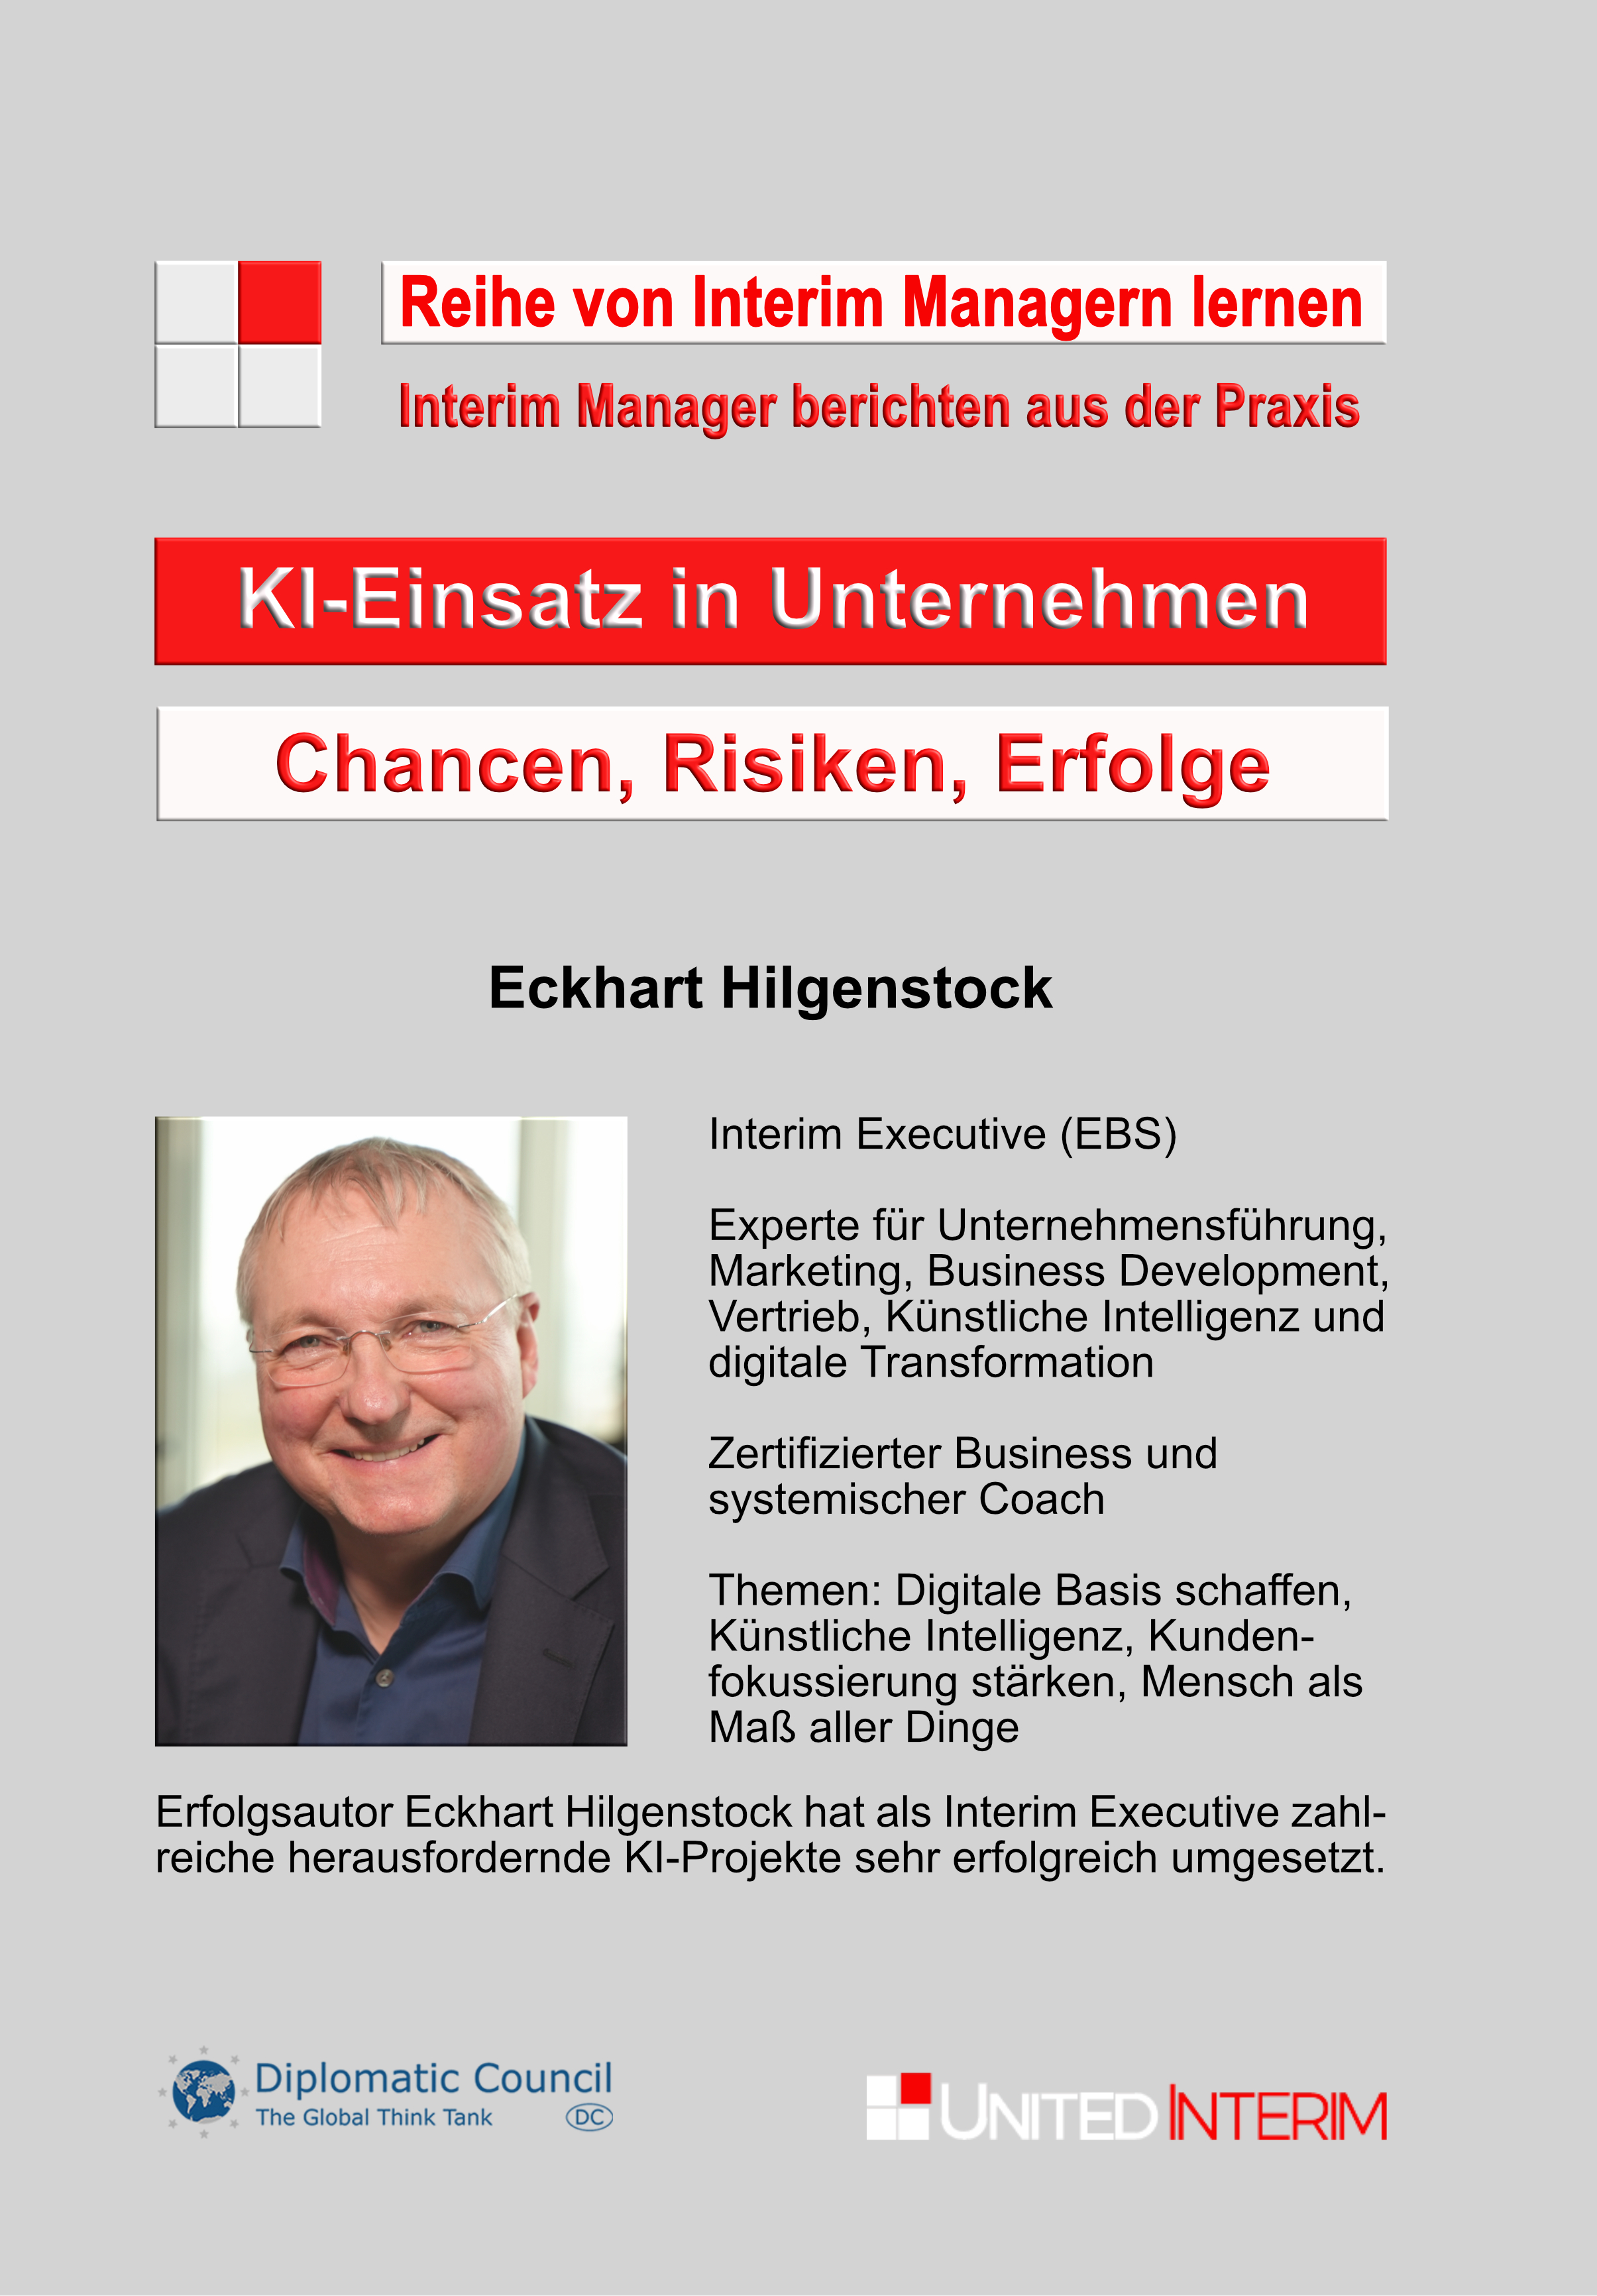 Eckhart Hilgenstock